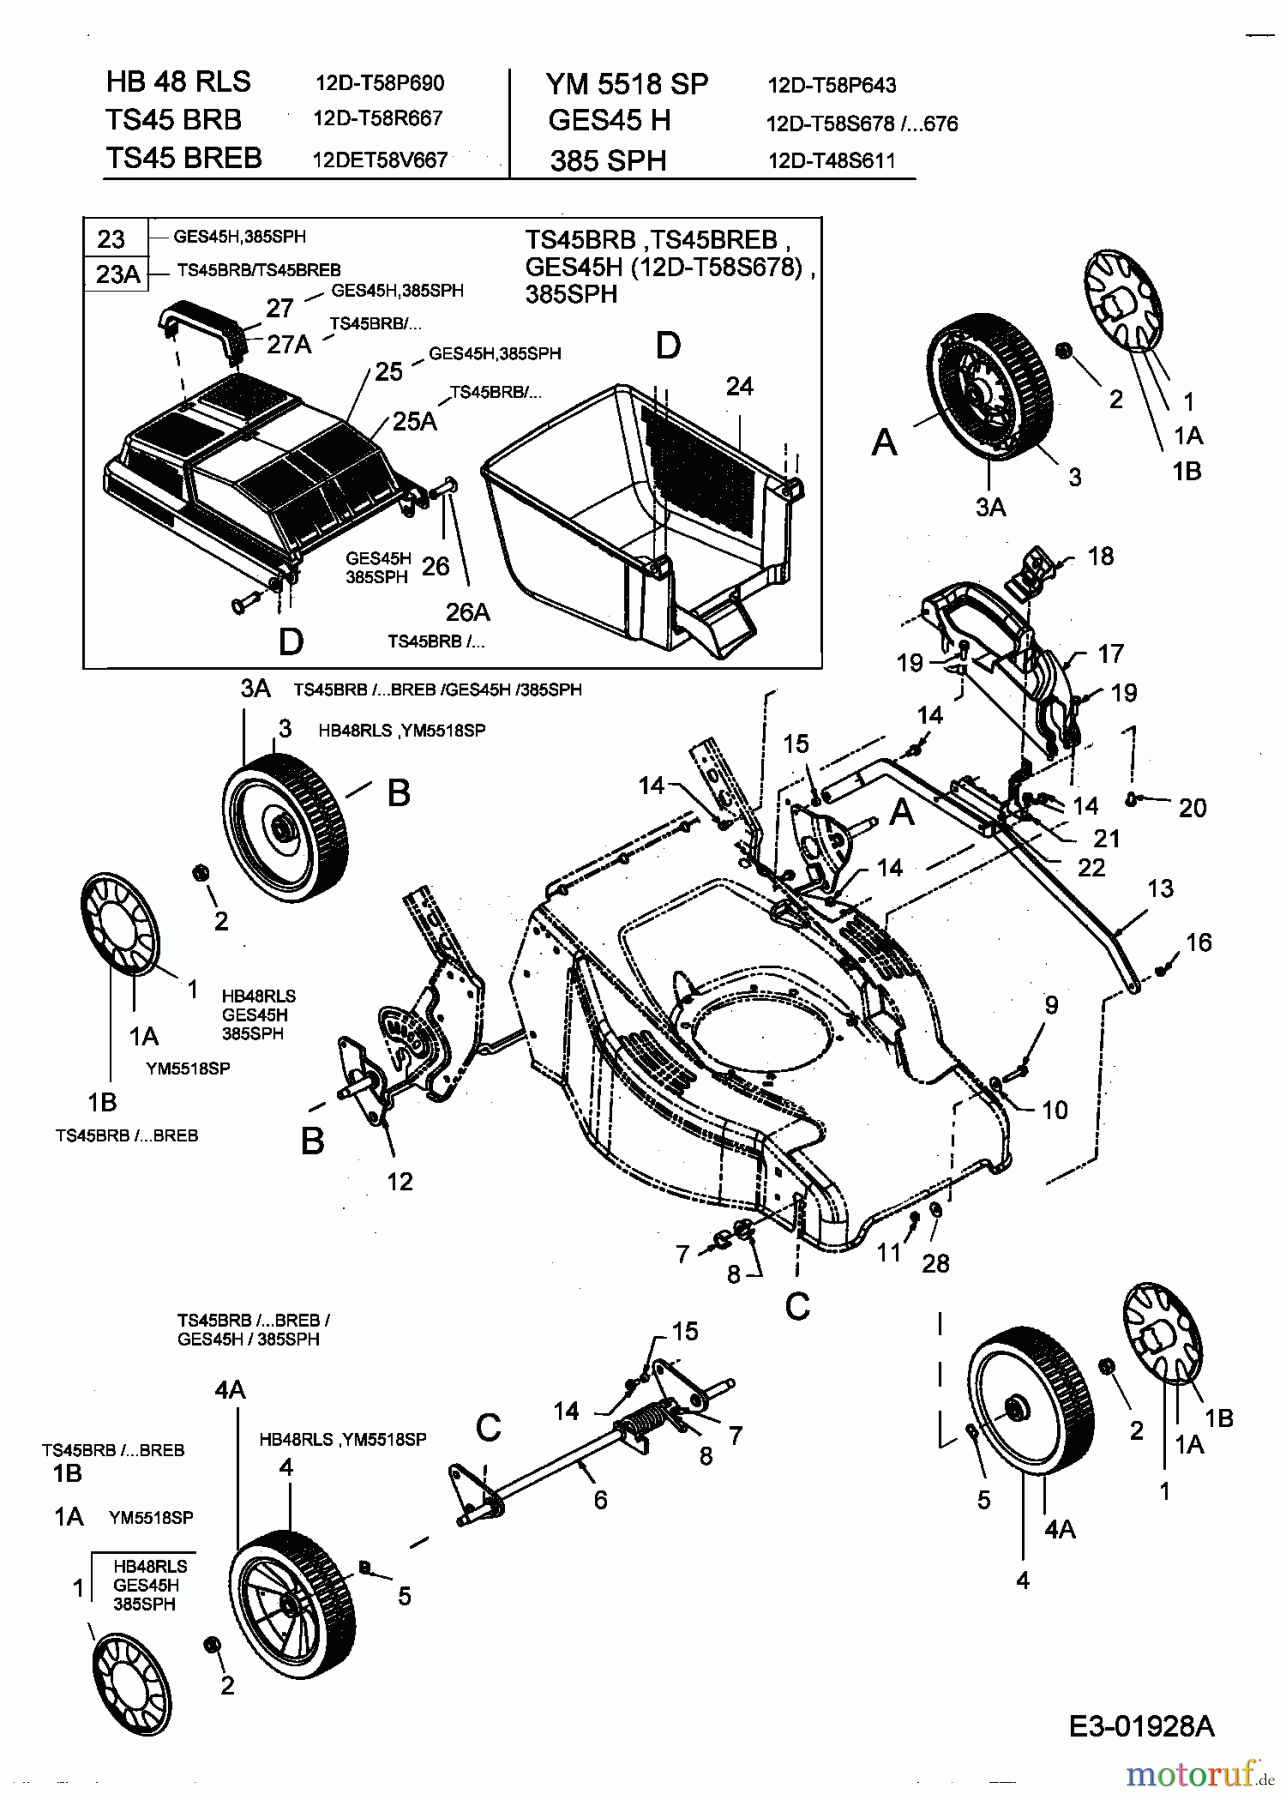  Turbo Silent Petrol mower self propelled TS 45 BR-B 12D-T58R667  (2004) Grass box, Wheels, Cutting hight adjustment